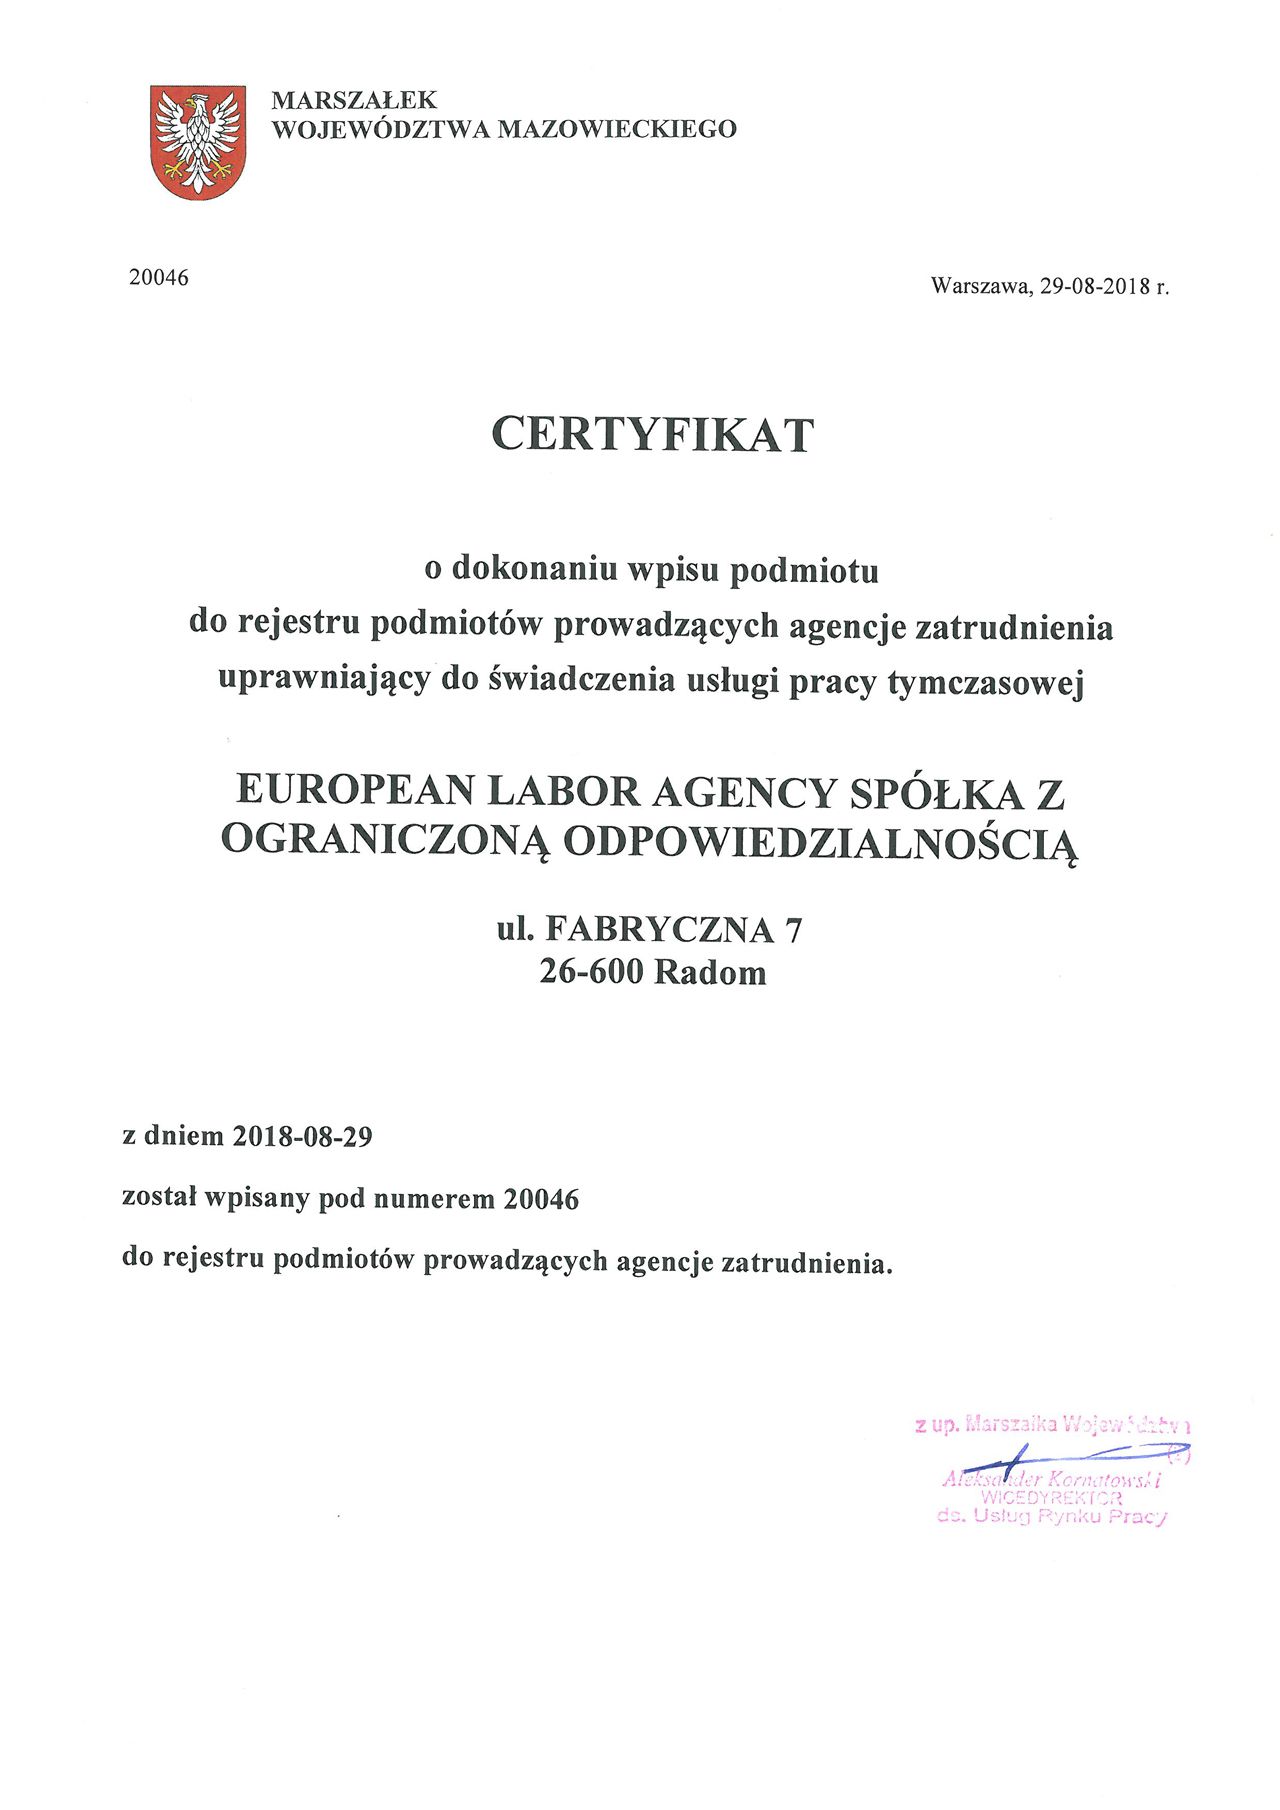 EuropLaborAgency praca tymczasowa certyfikat